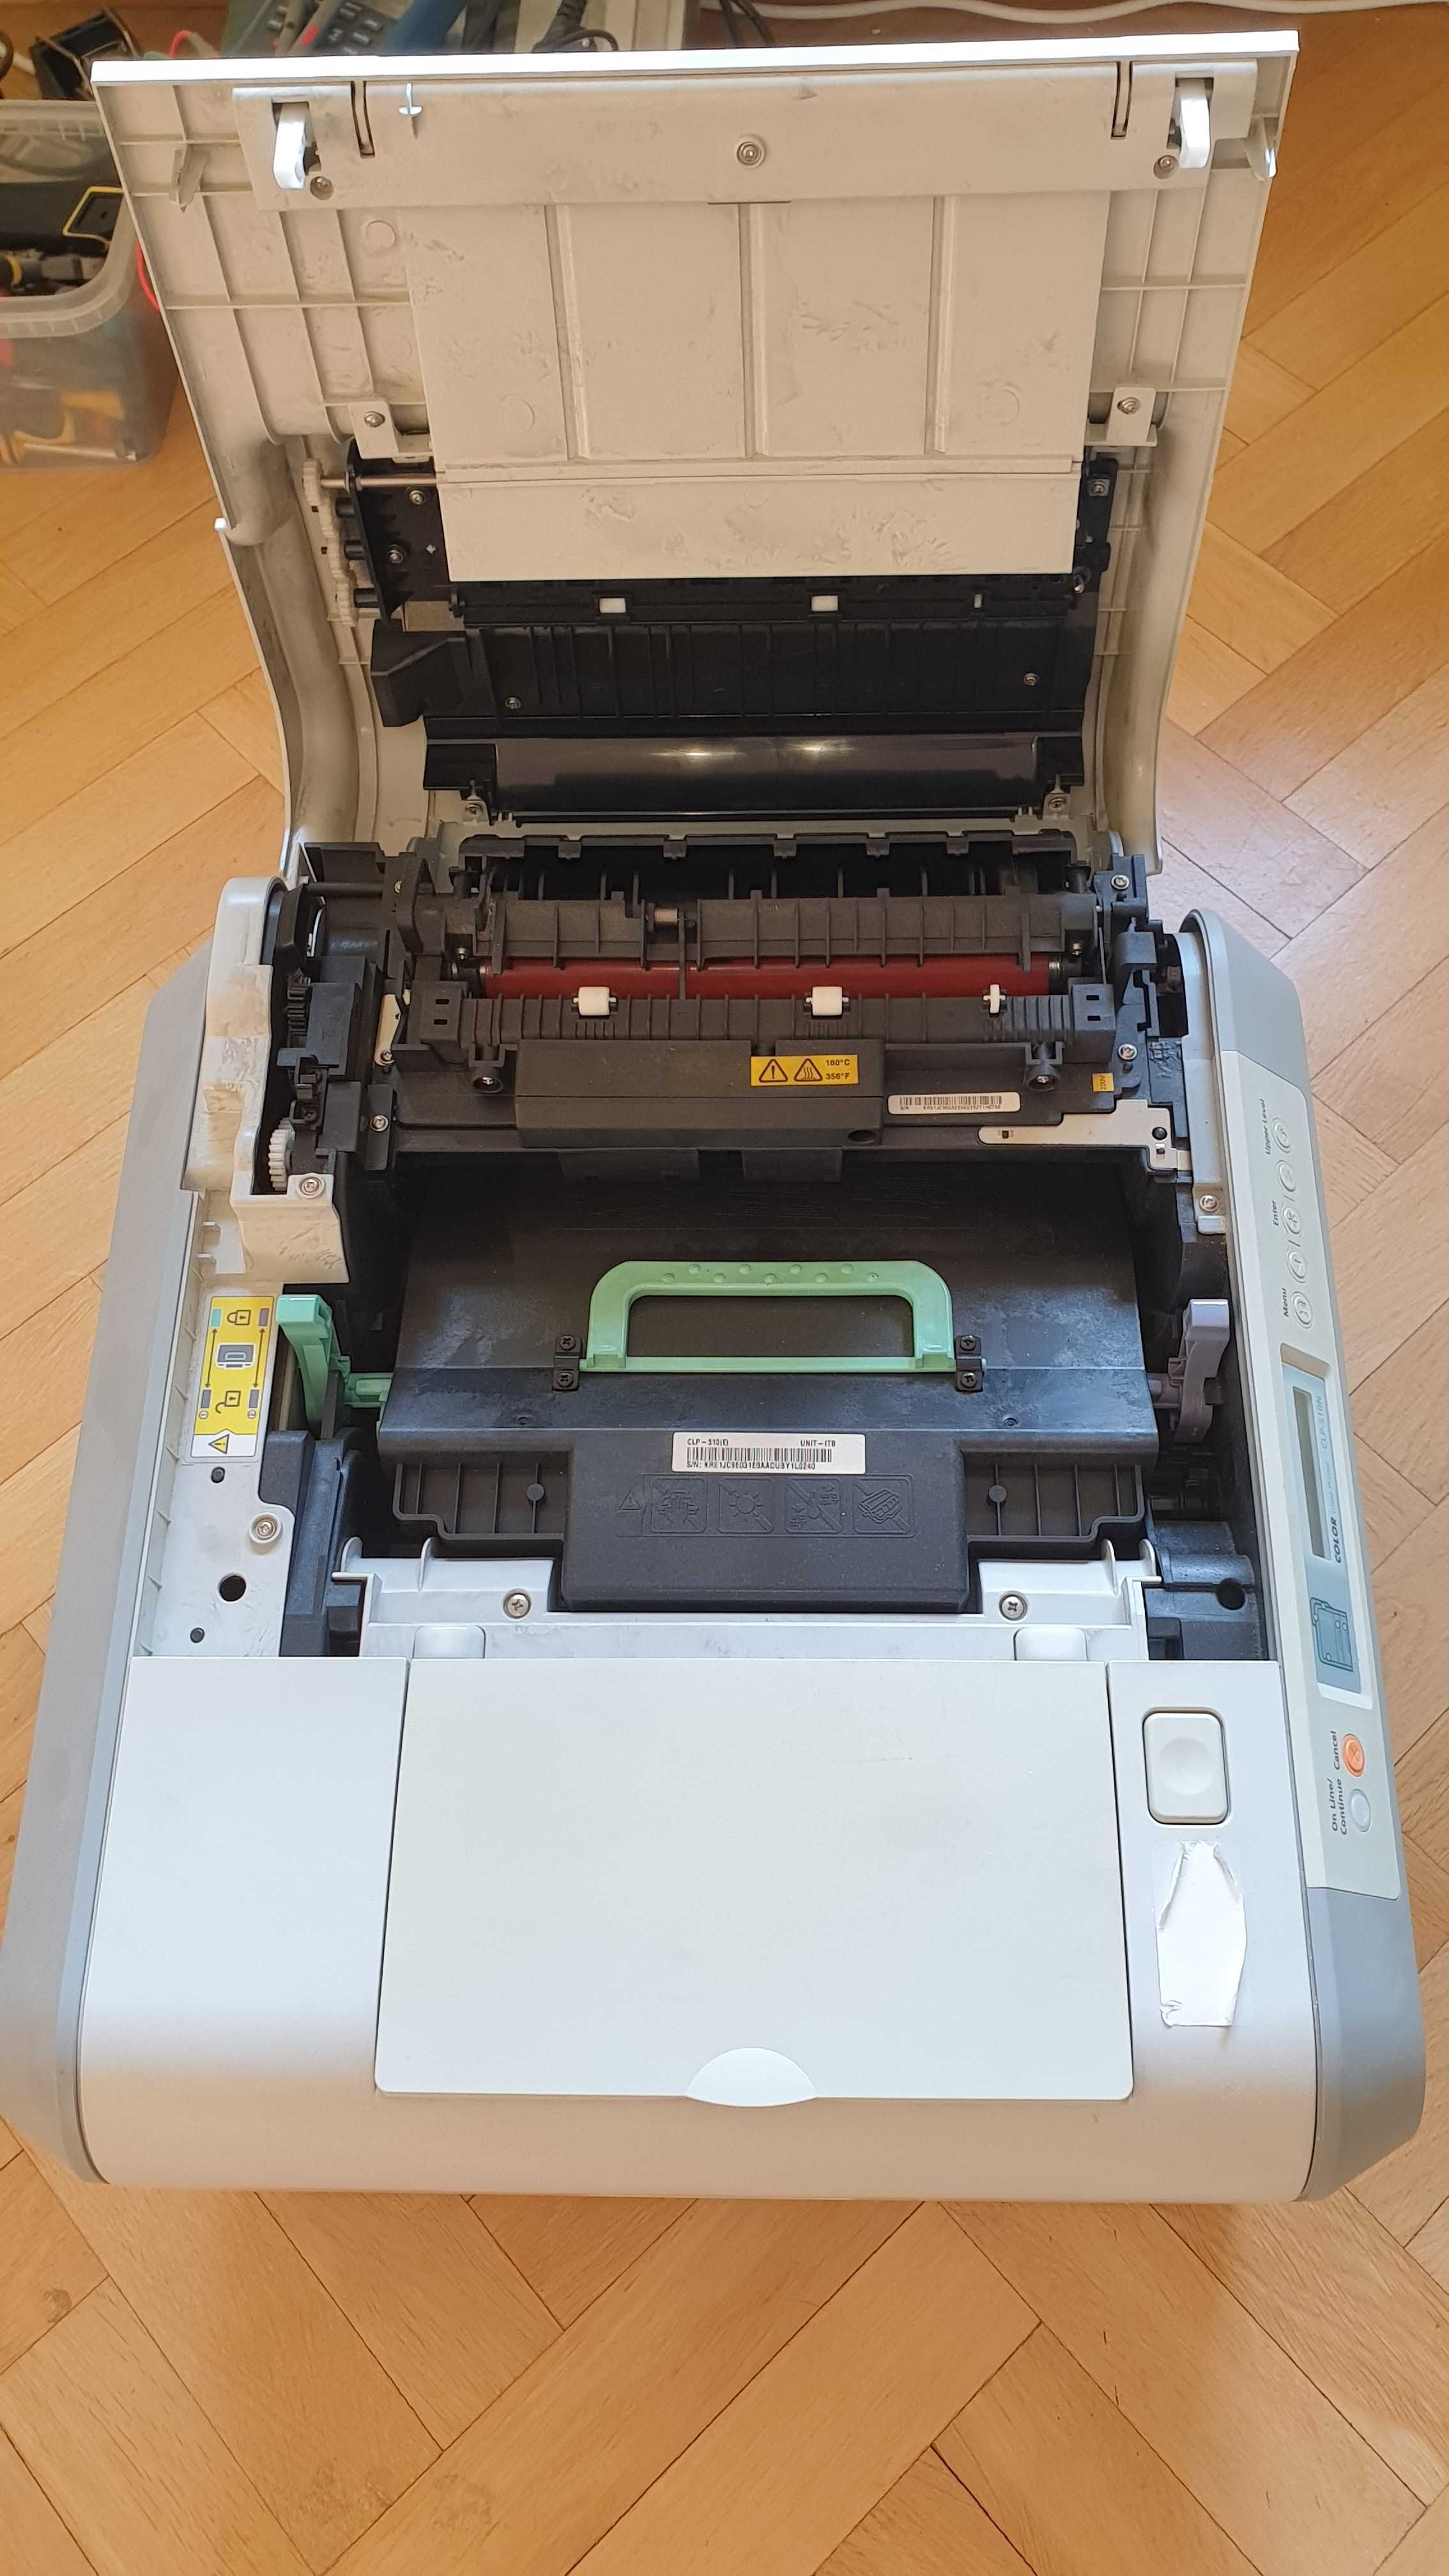 kolorowa drukarka laserowa Samsung CLP-510N